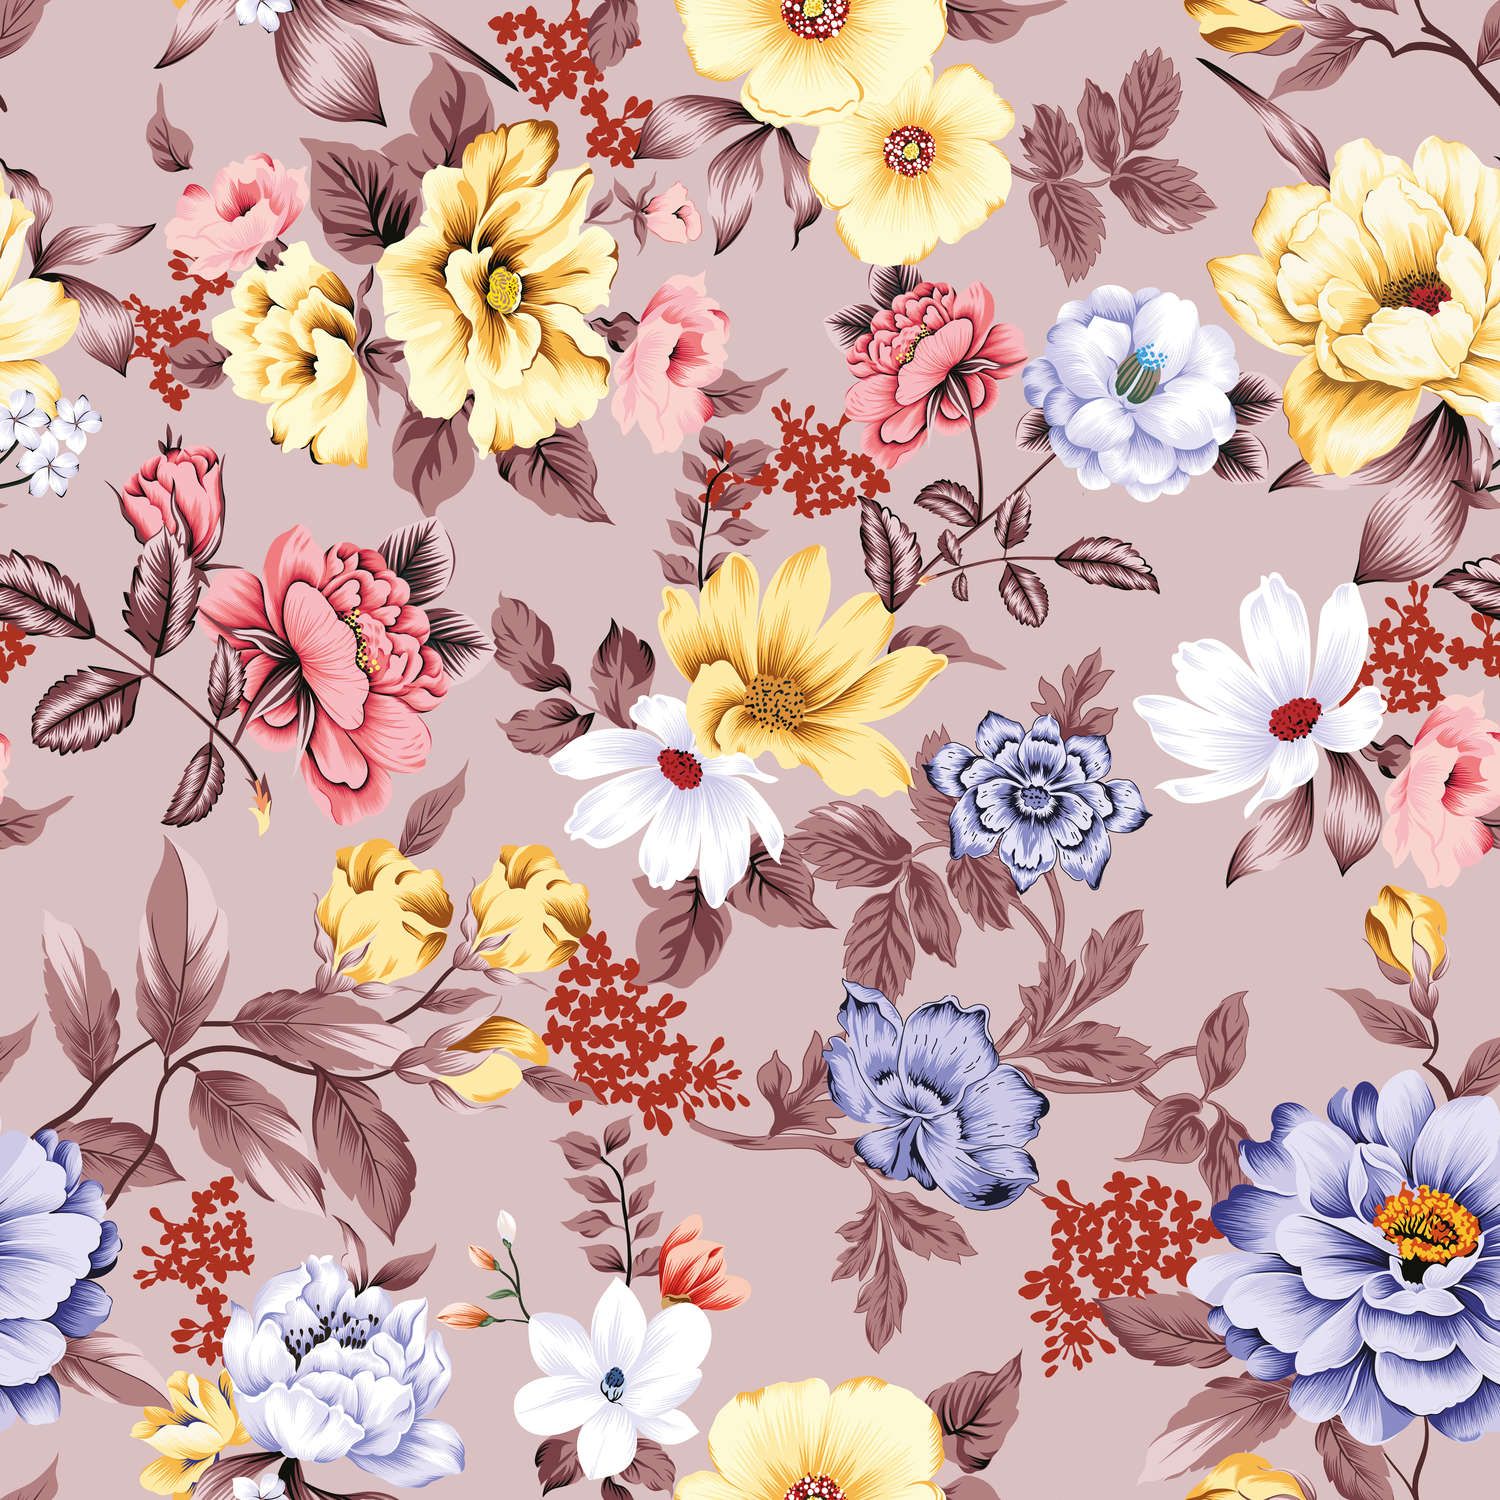             papiers peints à impression numérique floral avec fleurs et feuilles - intissé lisse & mat
        